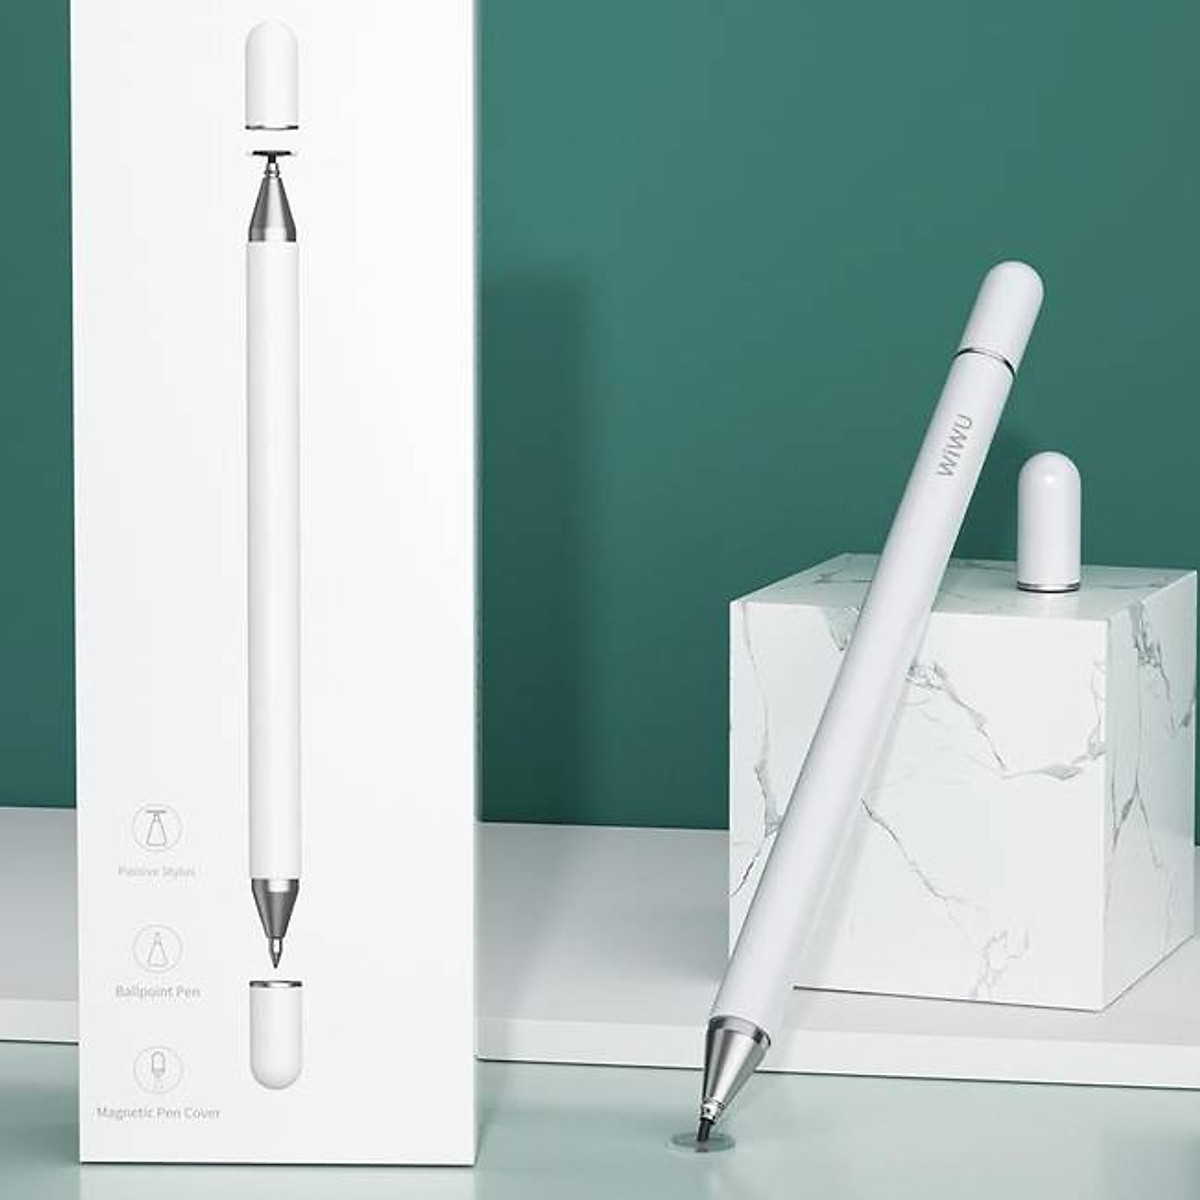 Bút cảm ứng Wiwu Pencil Pro cho iPad viết vẽ nghiêng hơn 60 độ, chống tì  tay như Apple Pencil, hút nam châm